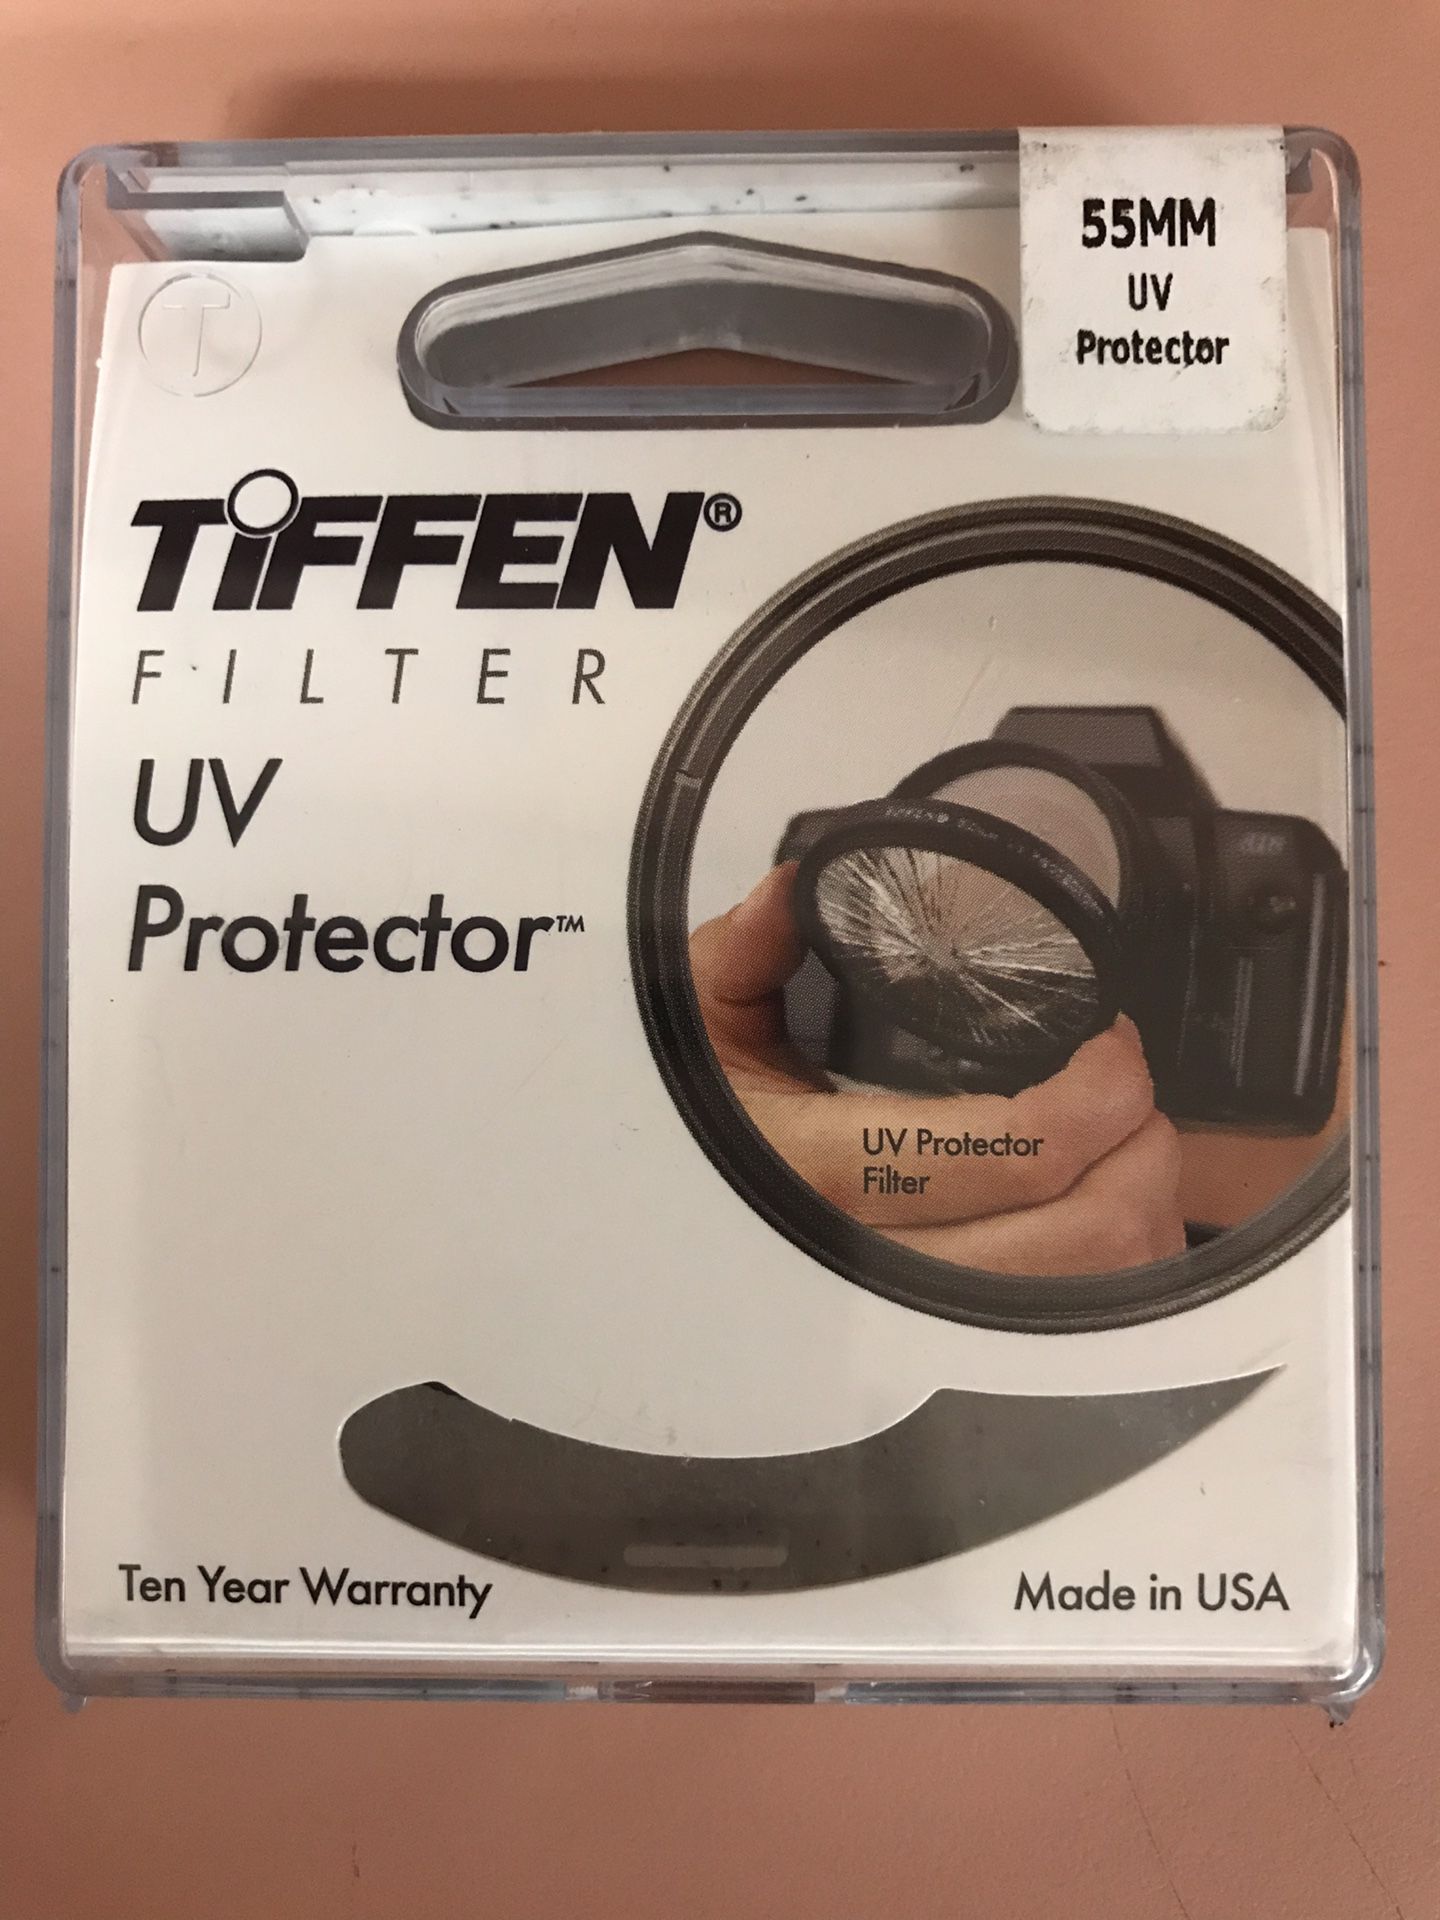 Tiffen filter UV protector 55mm